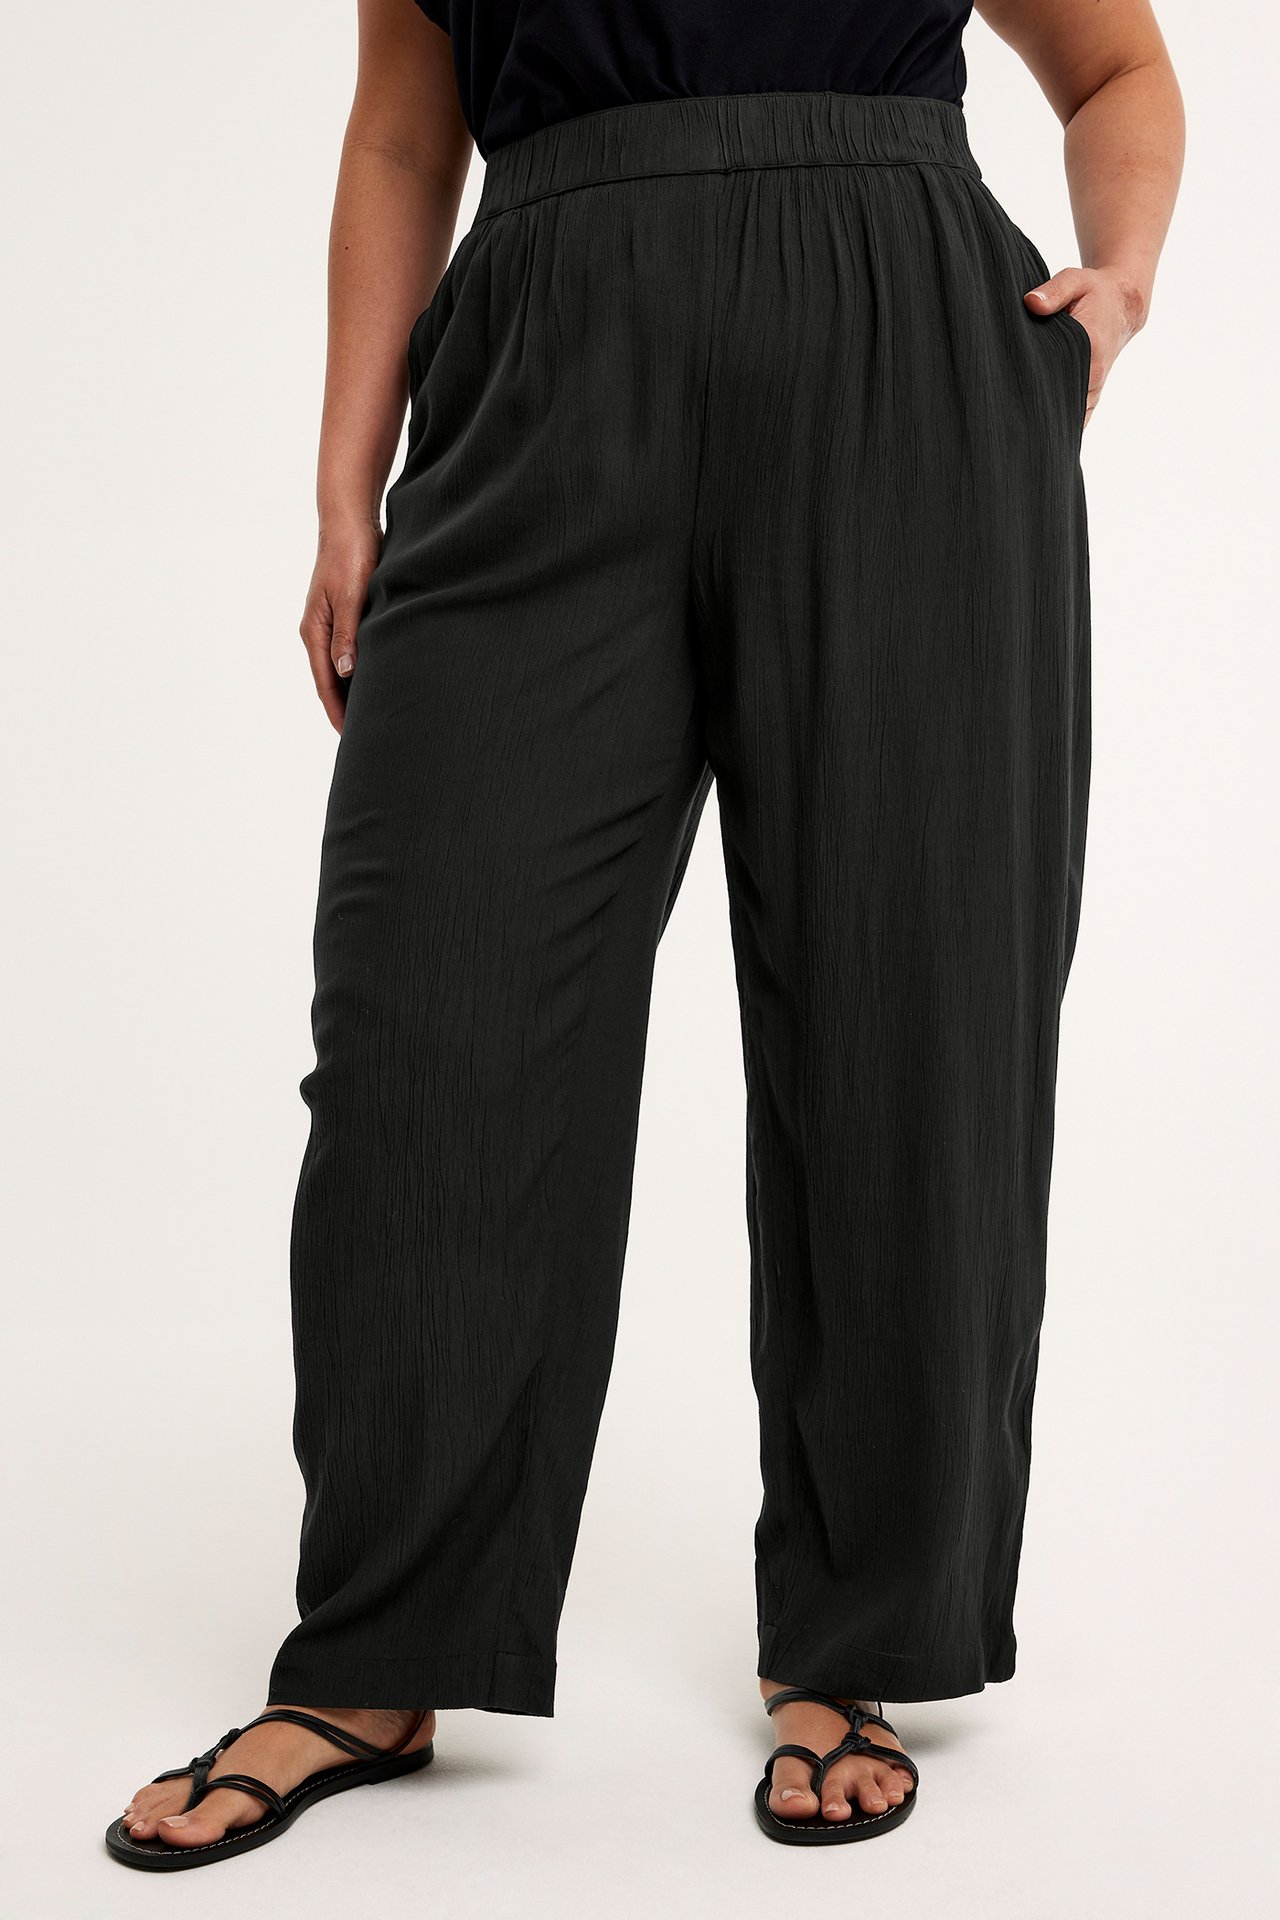 Marszczone spodnie - Czarne - 173cm / Storlek: XL - 2